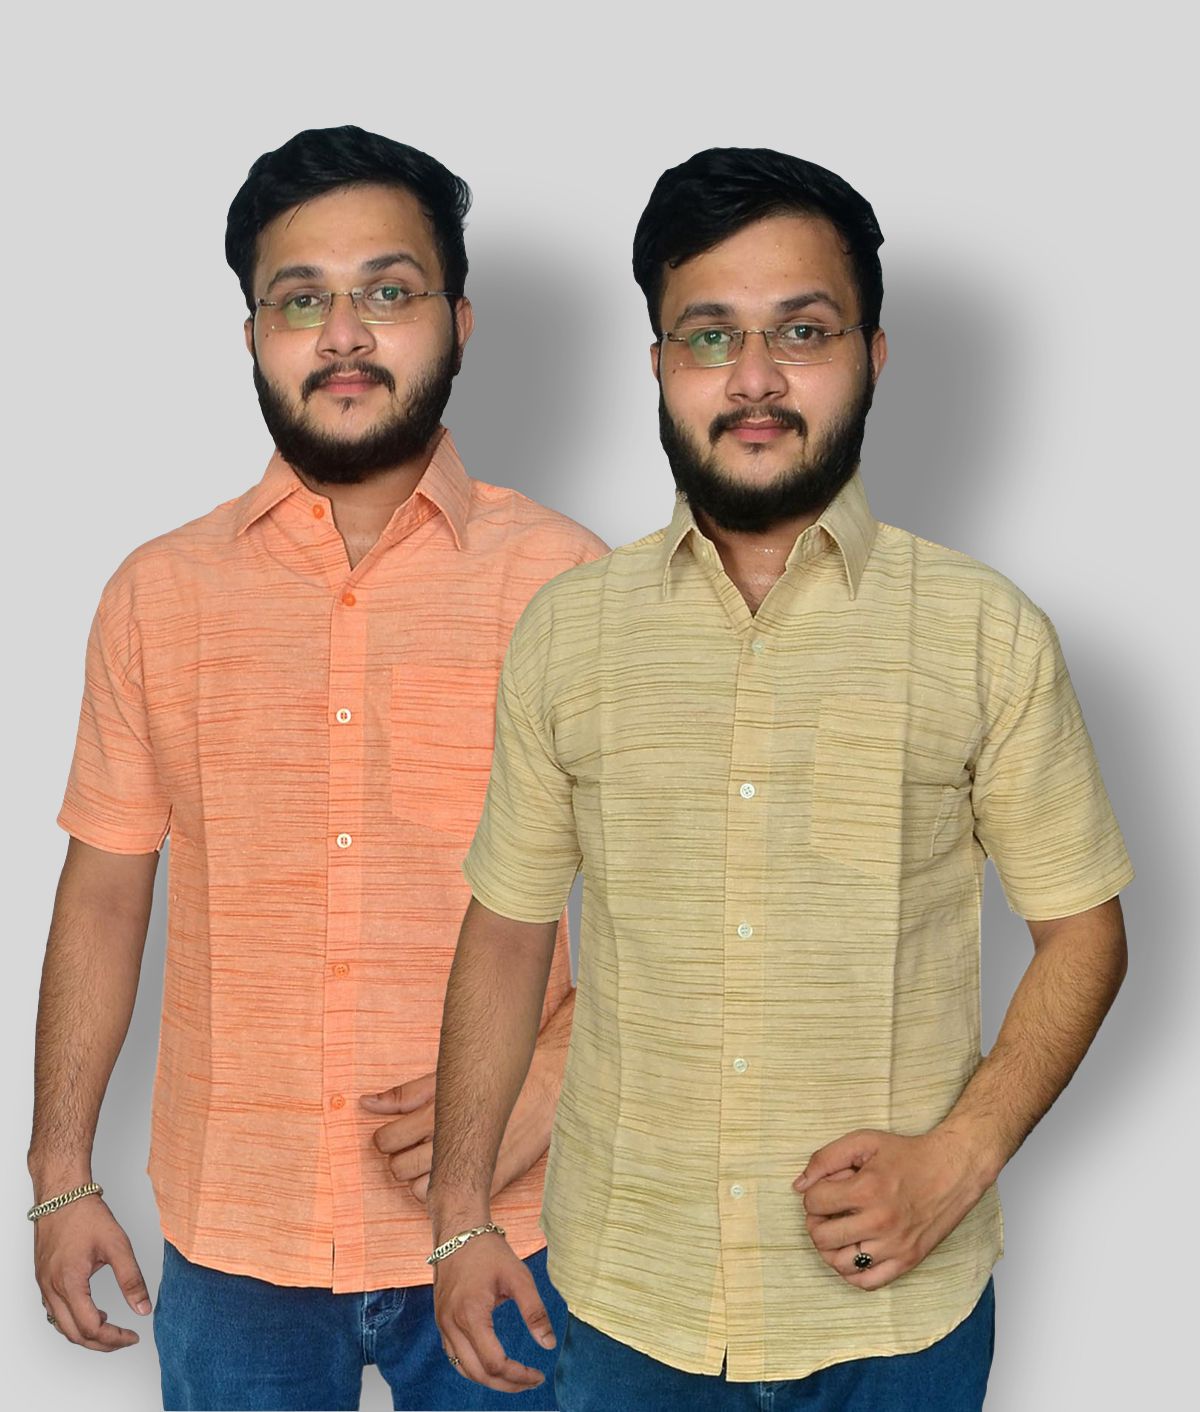     			DESHBANDHU DBK - Multi Cotton Blend Regular Fit Men's Formal Shirt ( Pack of 2 )